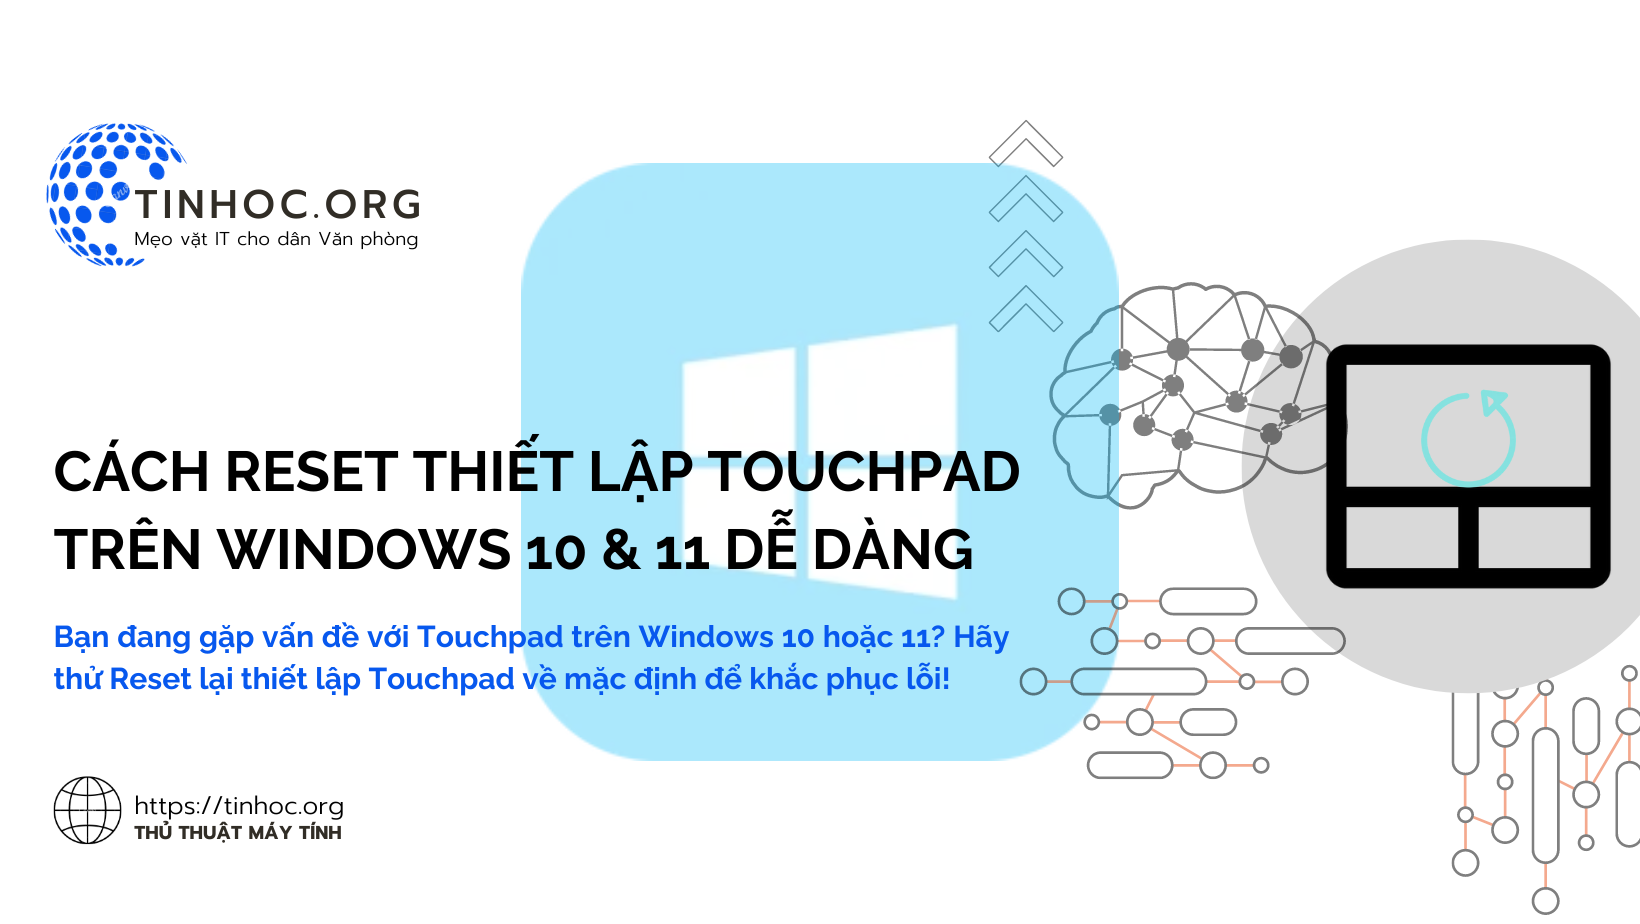 Bạn đang gặp vấn đề với Touchpad trên Windows 10 hoặc 11? Hãy thử Reset lại thiết lập Touchpad về mặc định để khắc phục lỗi!